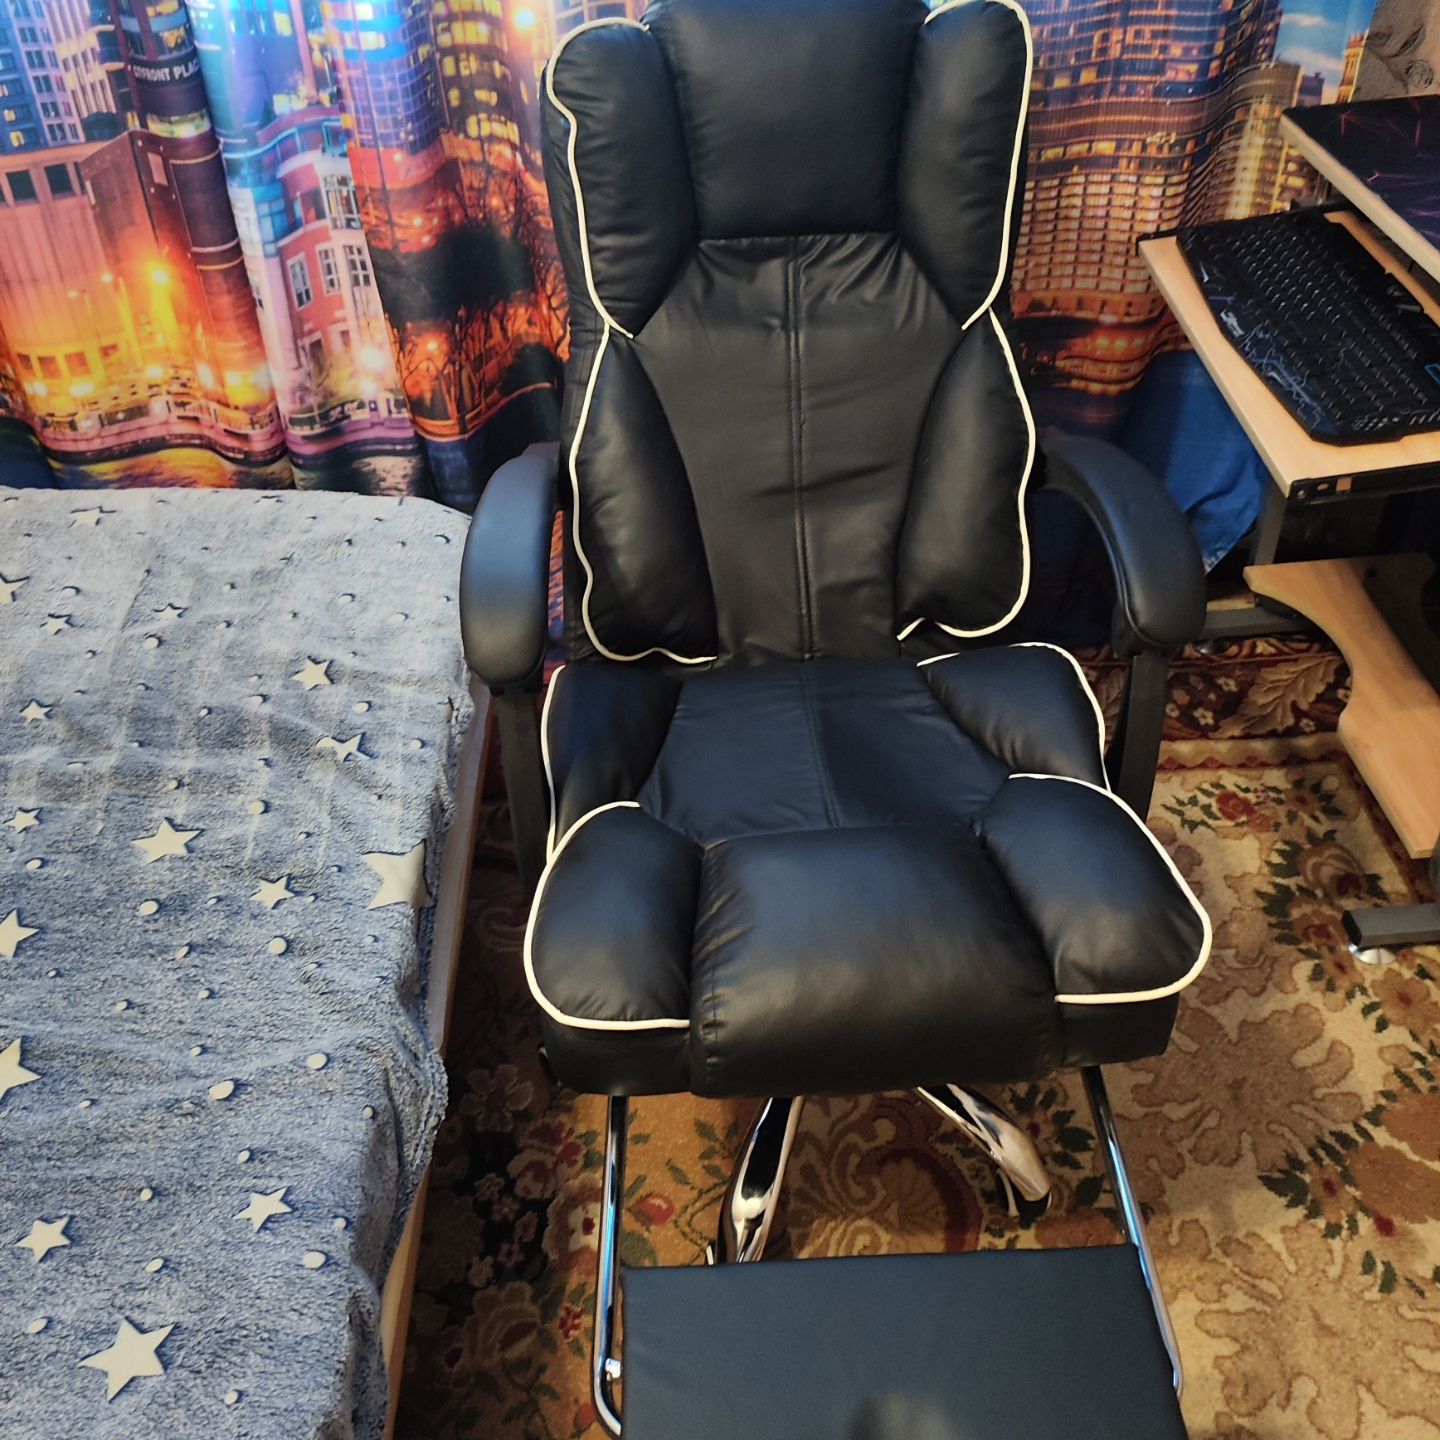 Продам новое игровое кресло